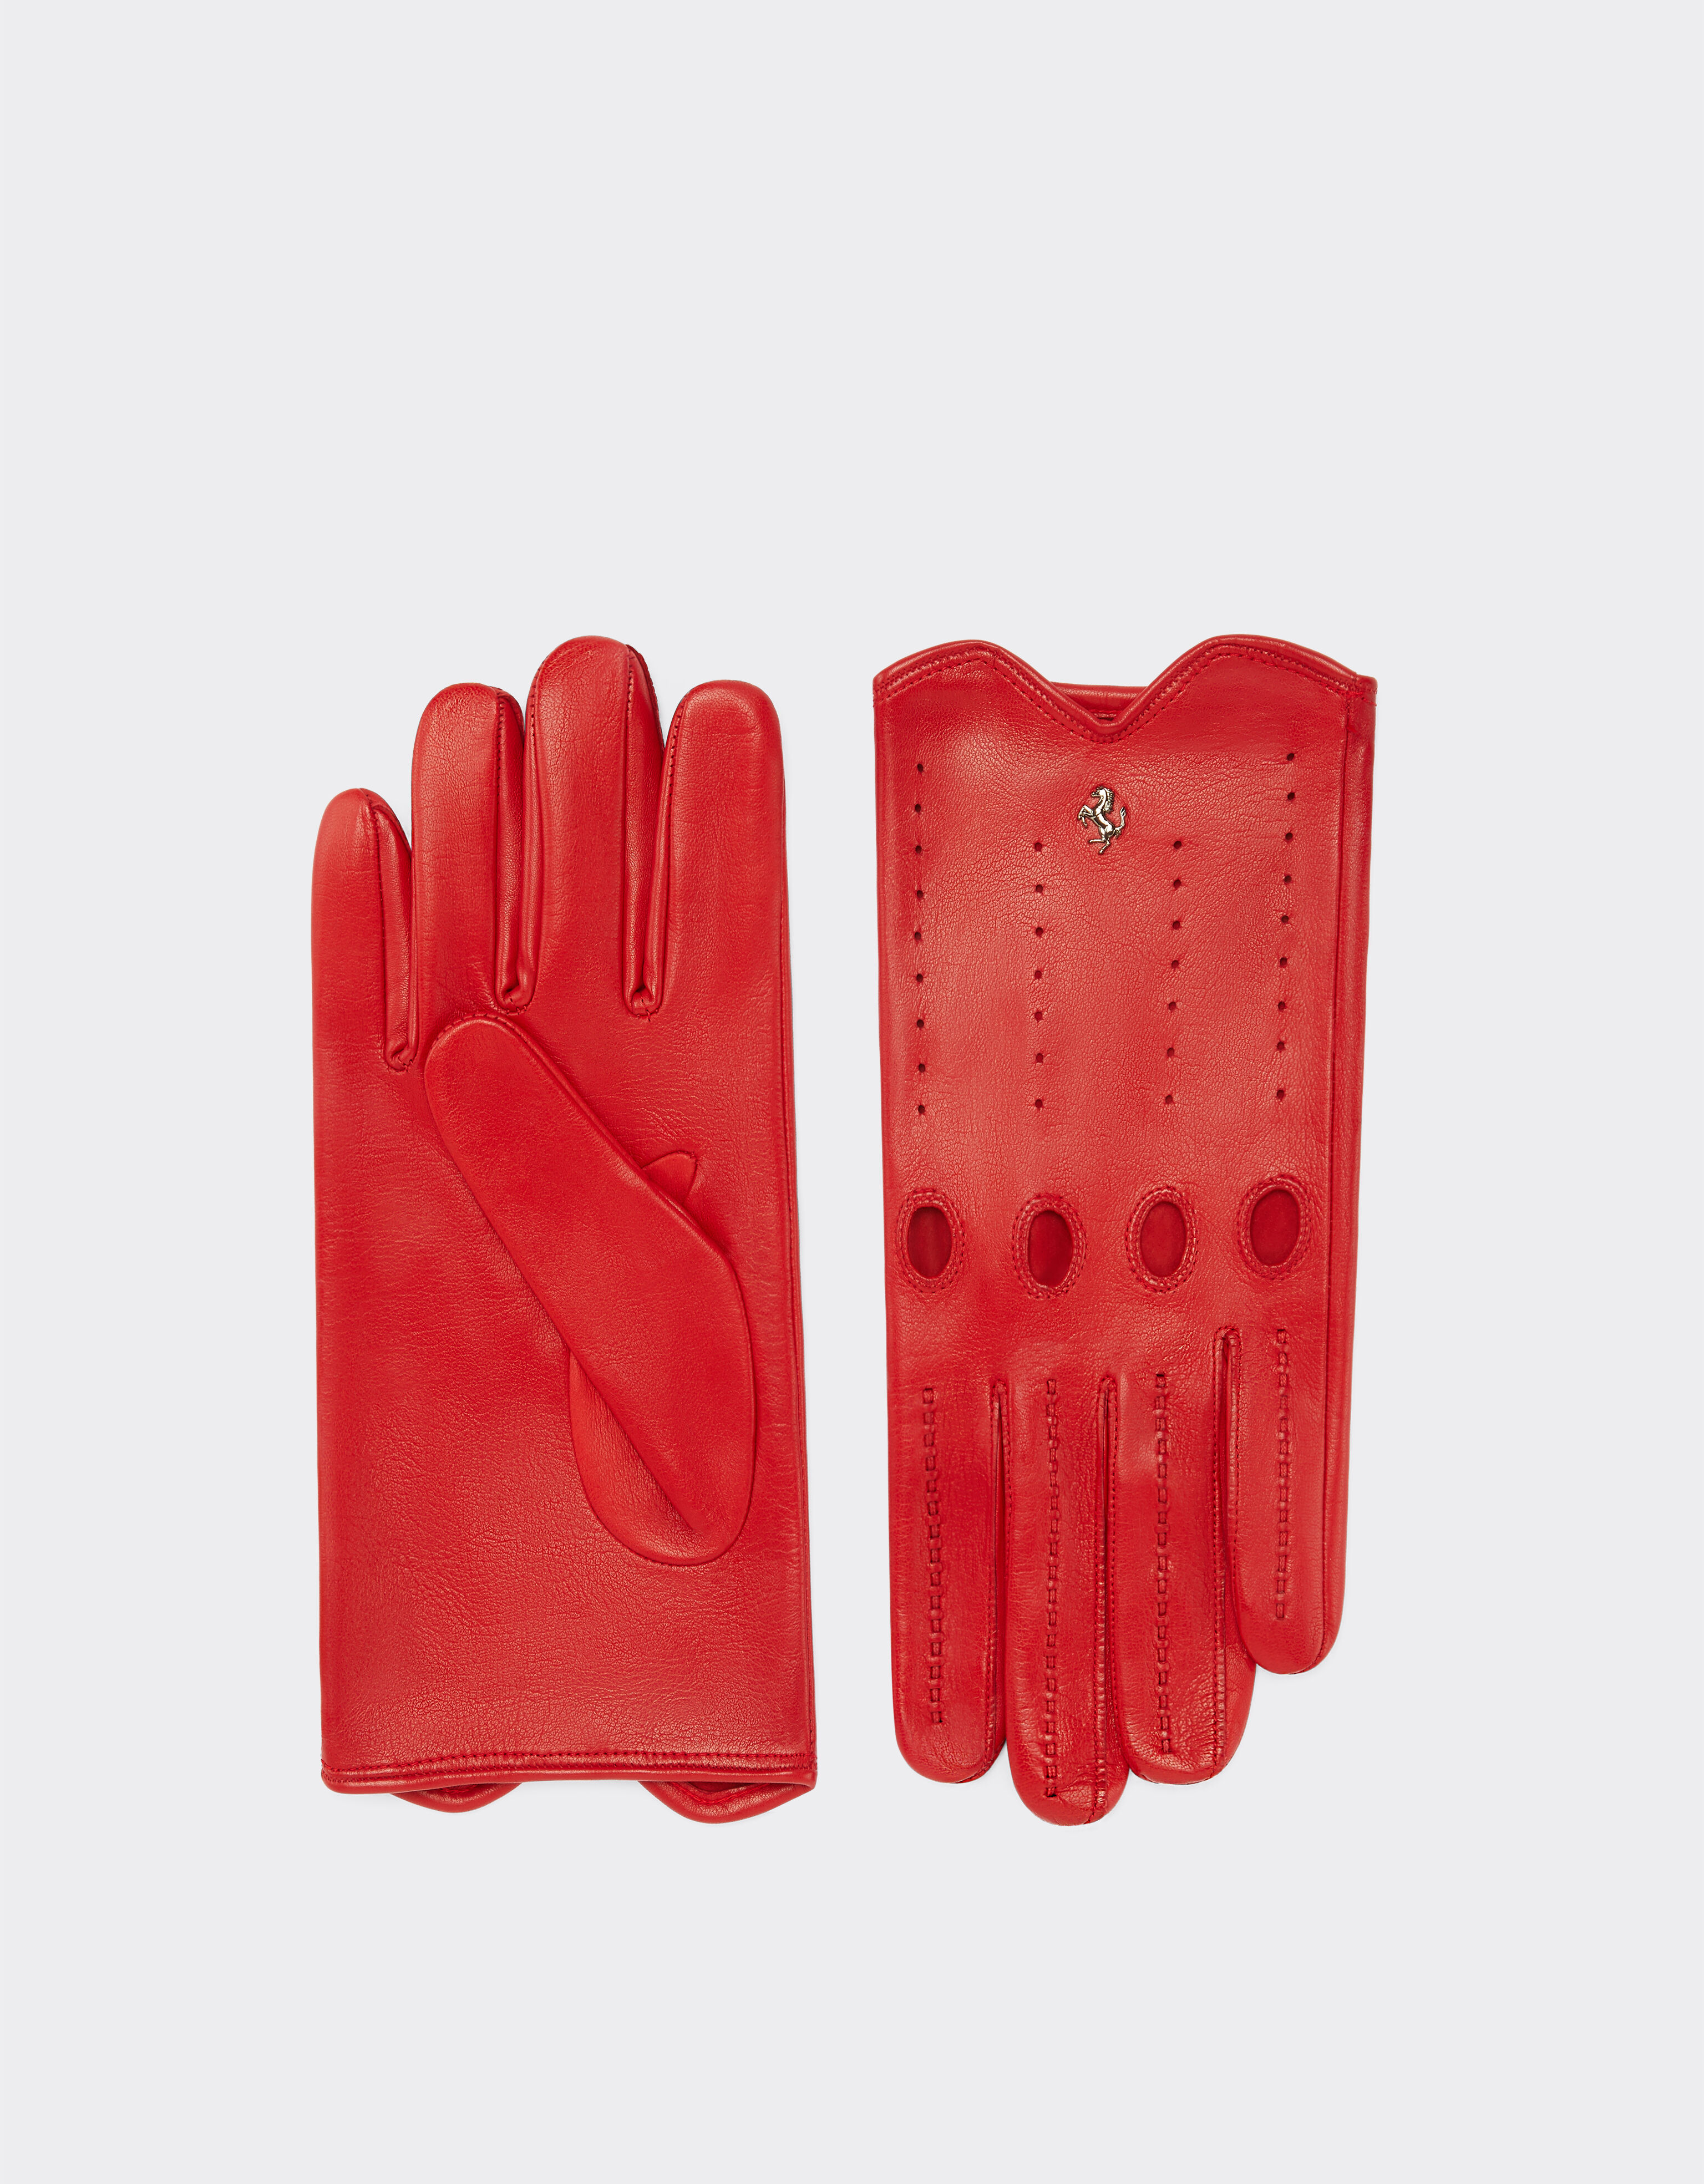 Ferrari Nappa leather driving gloves Rosso Corsa 20637f